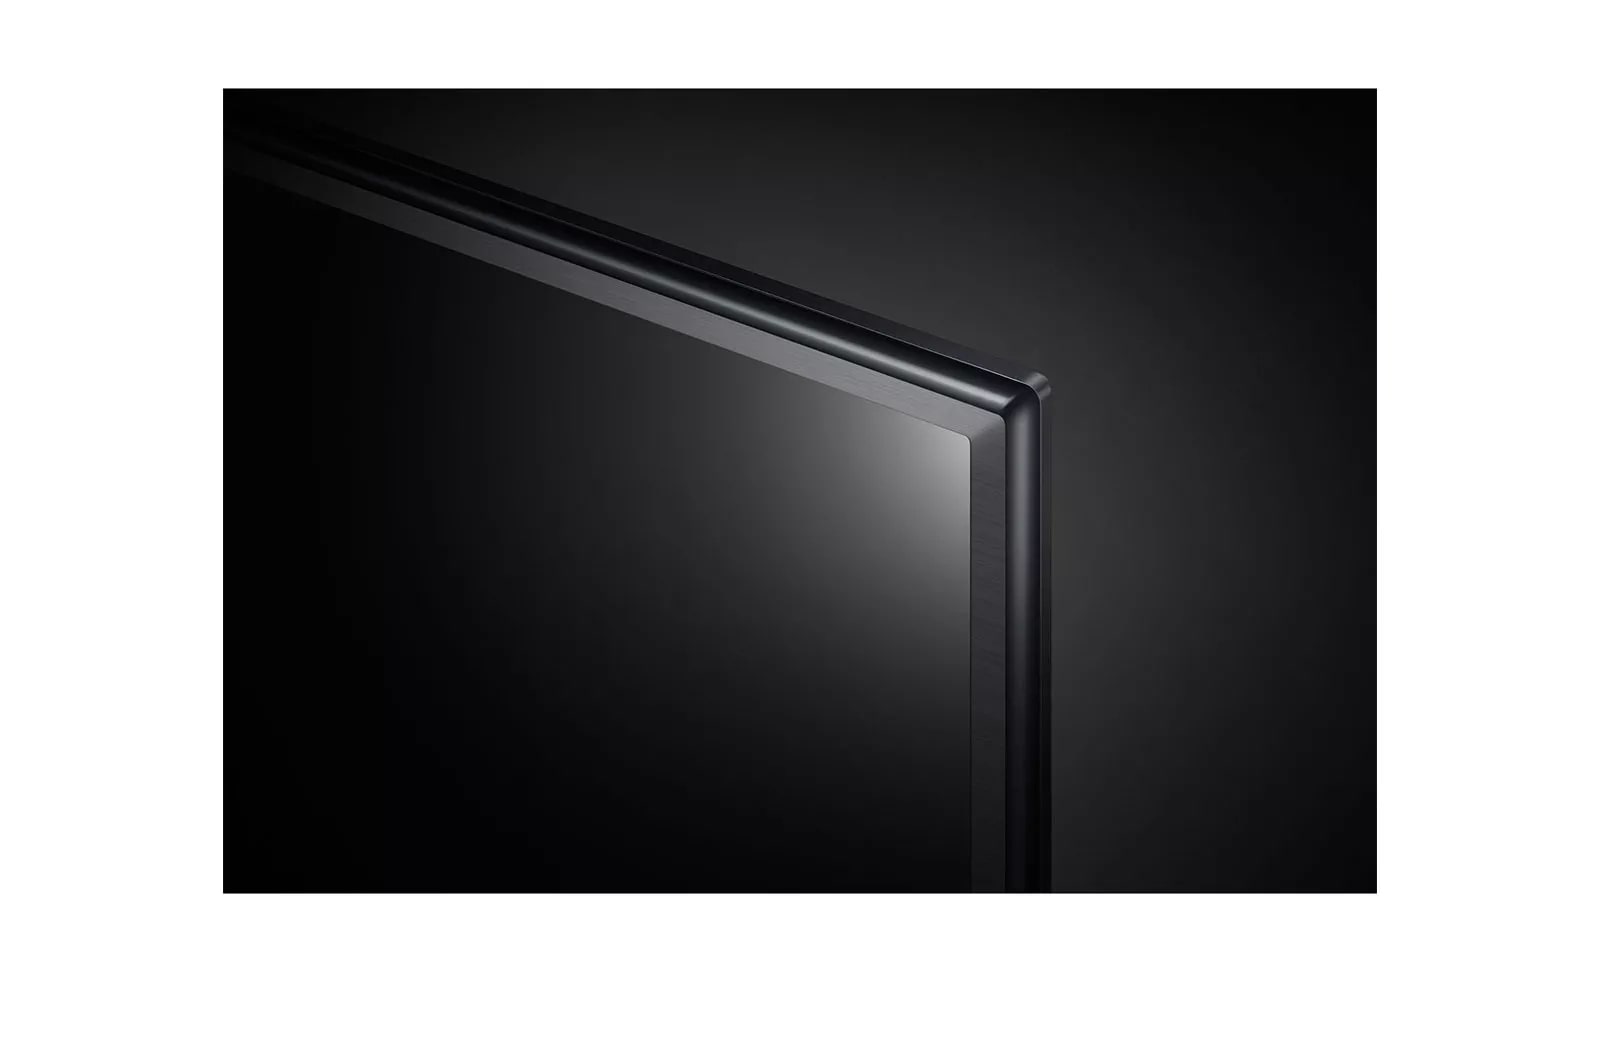 LG 55UM6910PUC : 55 Inch Class 4K HDR Smart LED TV | LG USA